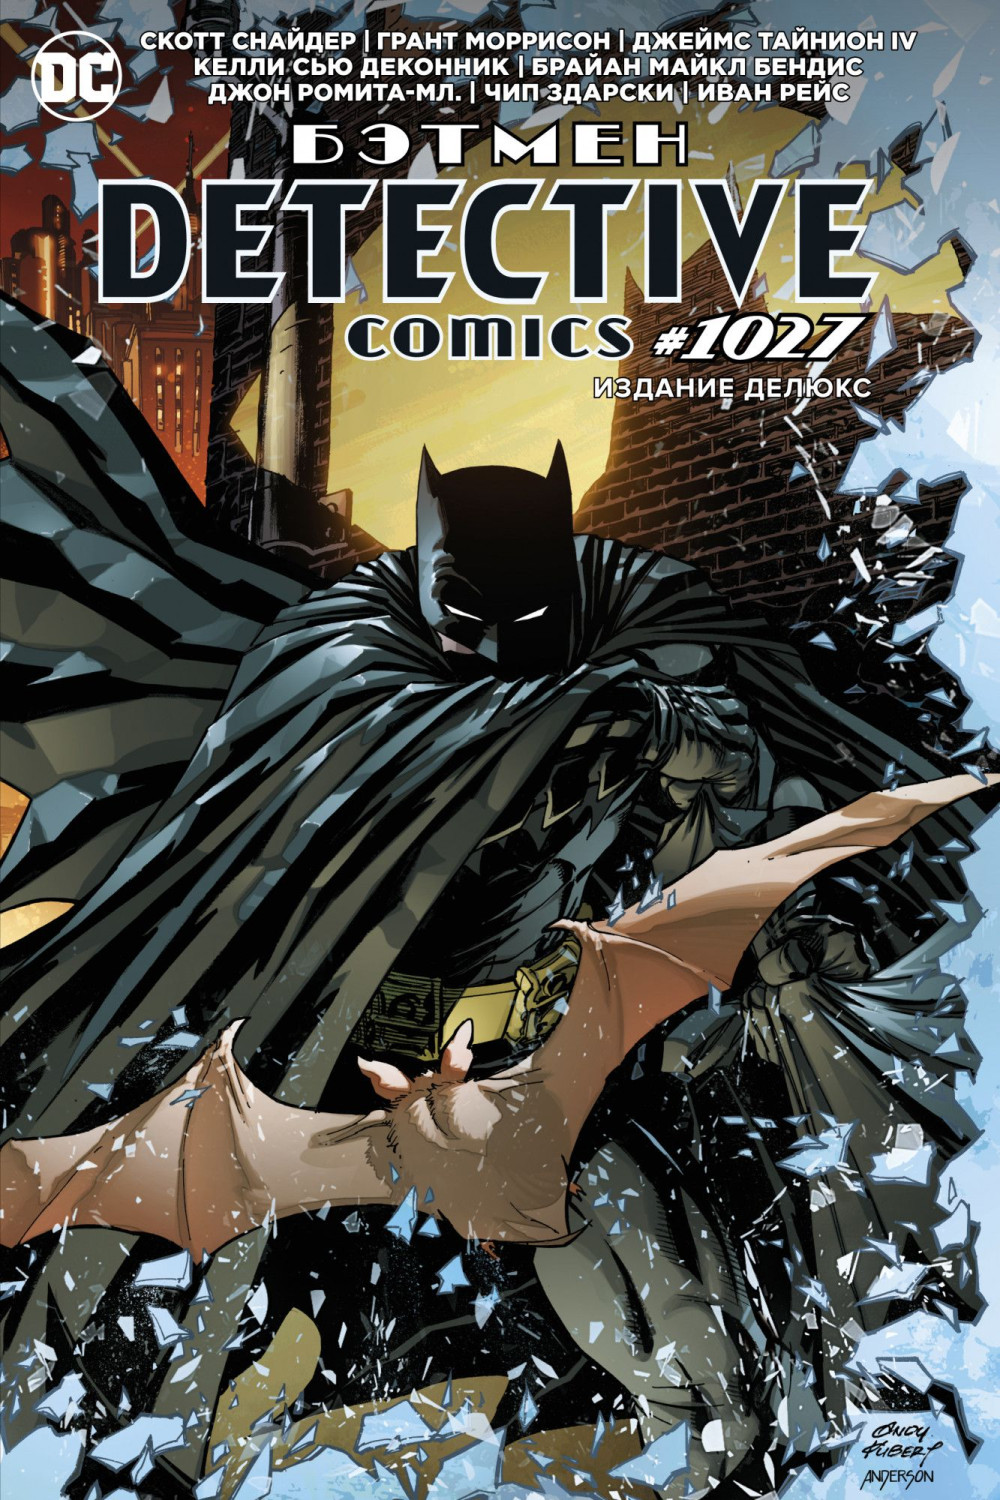   . Detective comics #1027.   +  DC Justice League Superman 